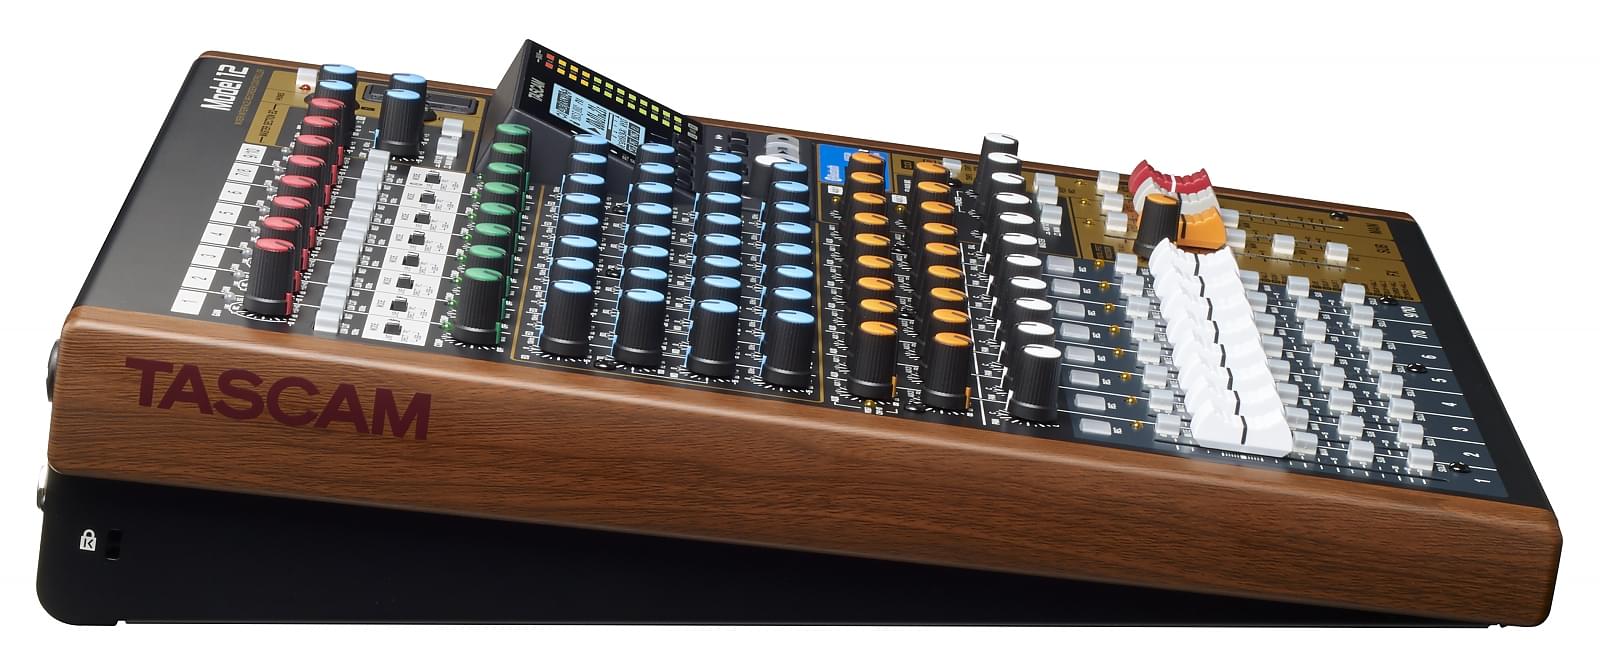 Tascam Model 12 | Mixer / Interface / Recorder / Controller